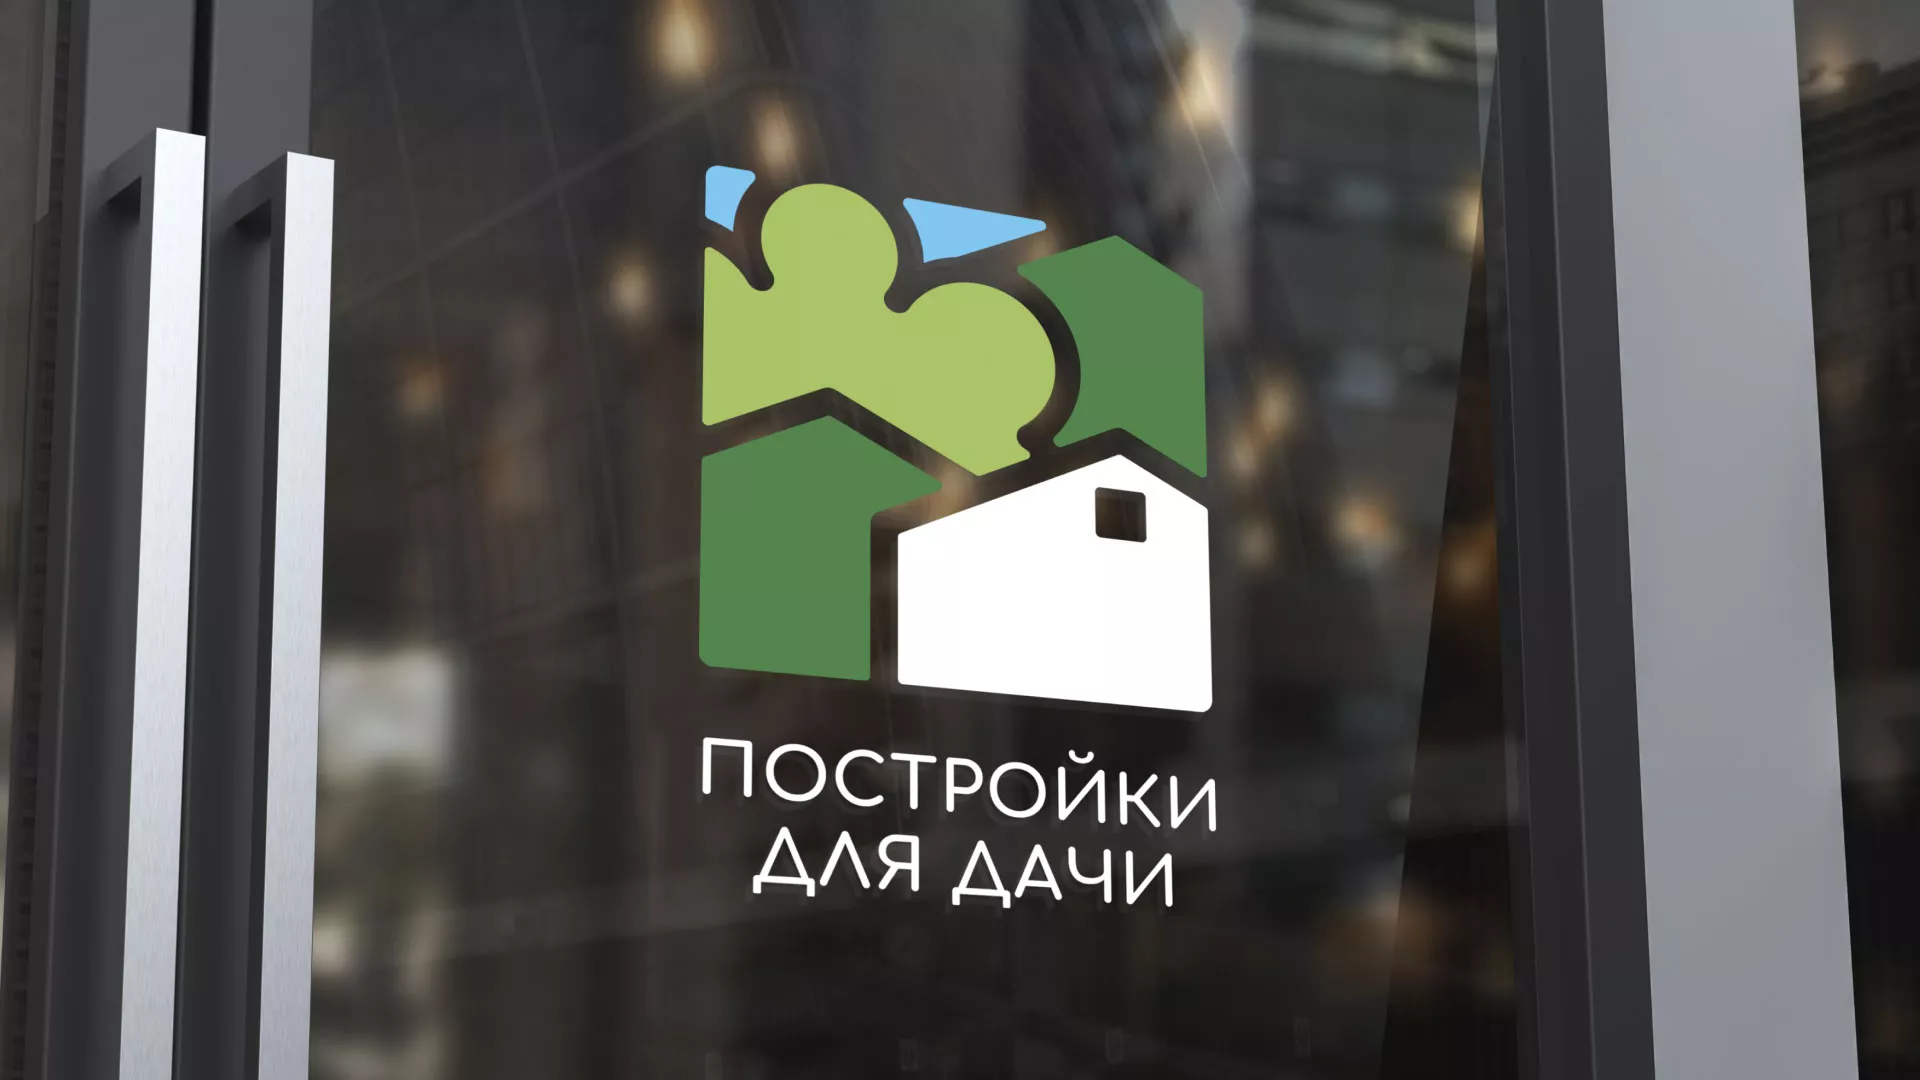 Разработка логотипа в Бокситогорске для компании «Постройки для дачи»